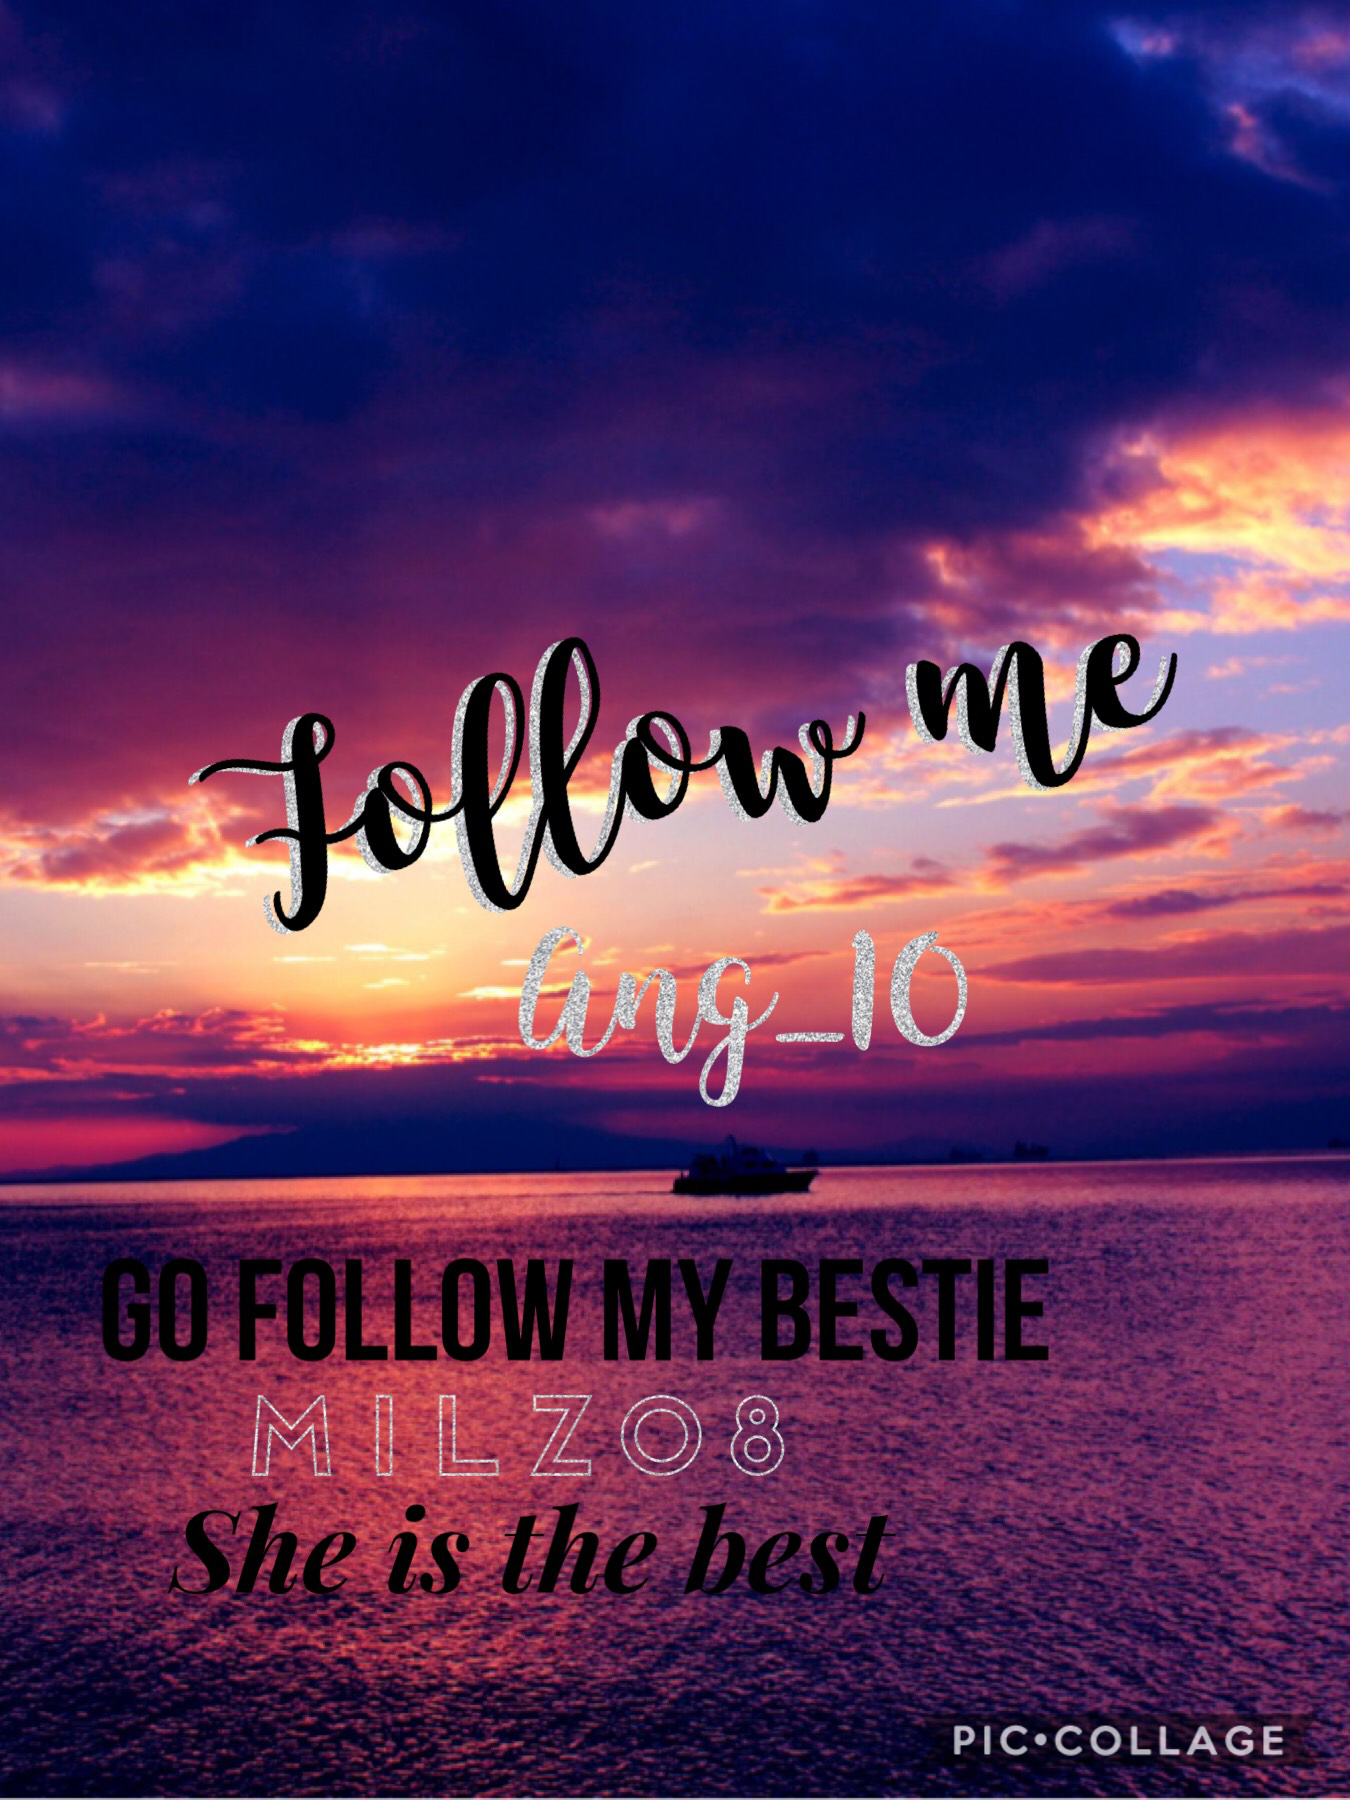 Follow me and my bestie milz08